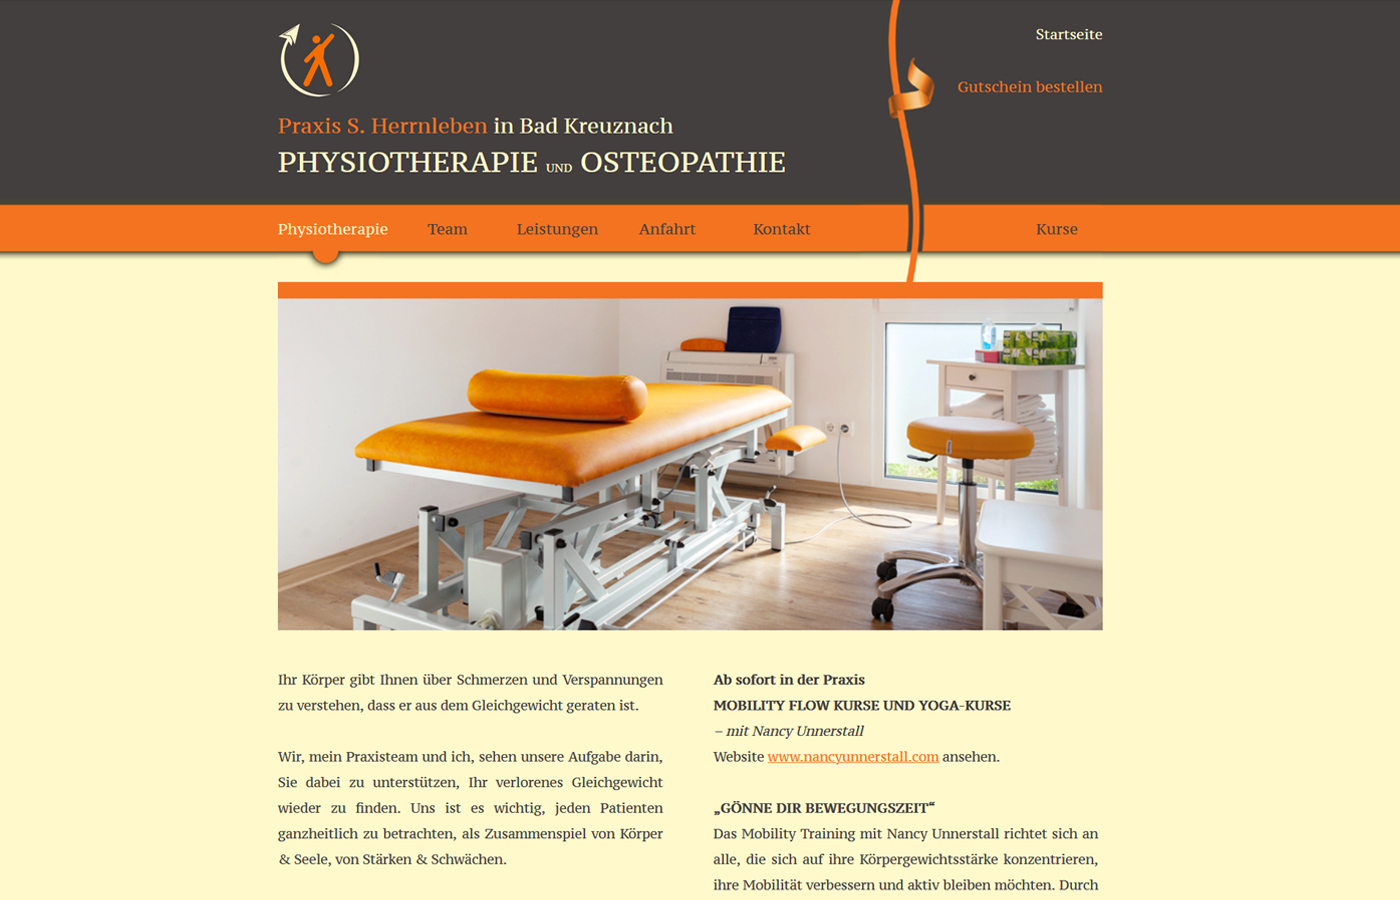 Praxis S. Herrnleben - Praxis für Physiotherapie und Osteopathie